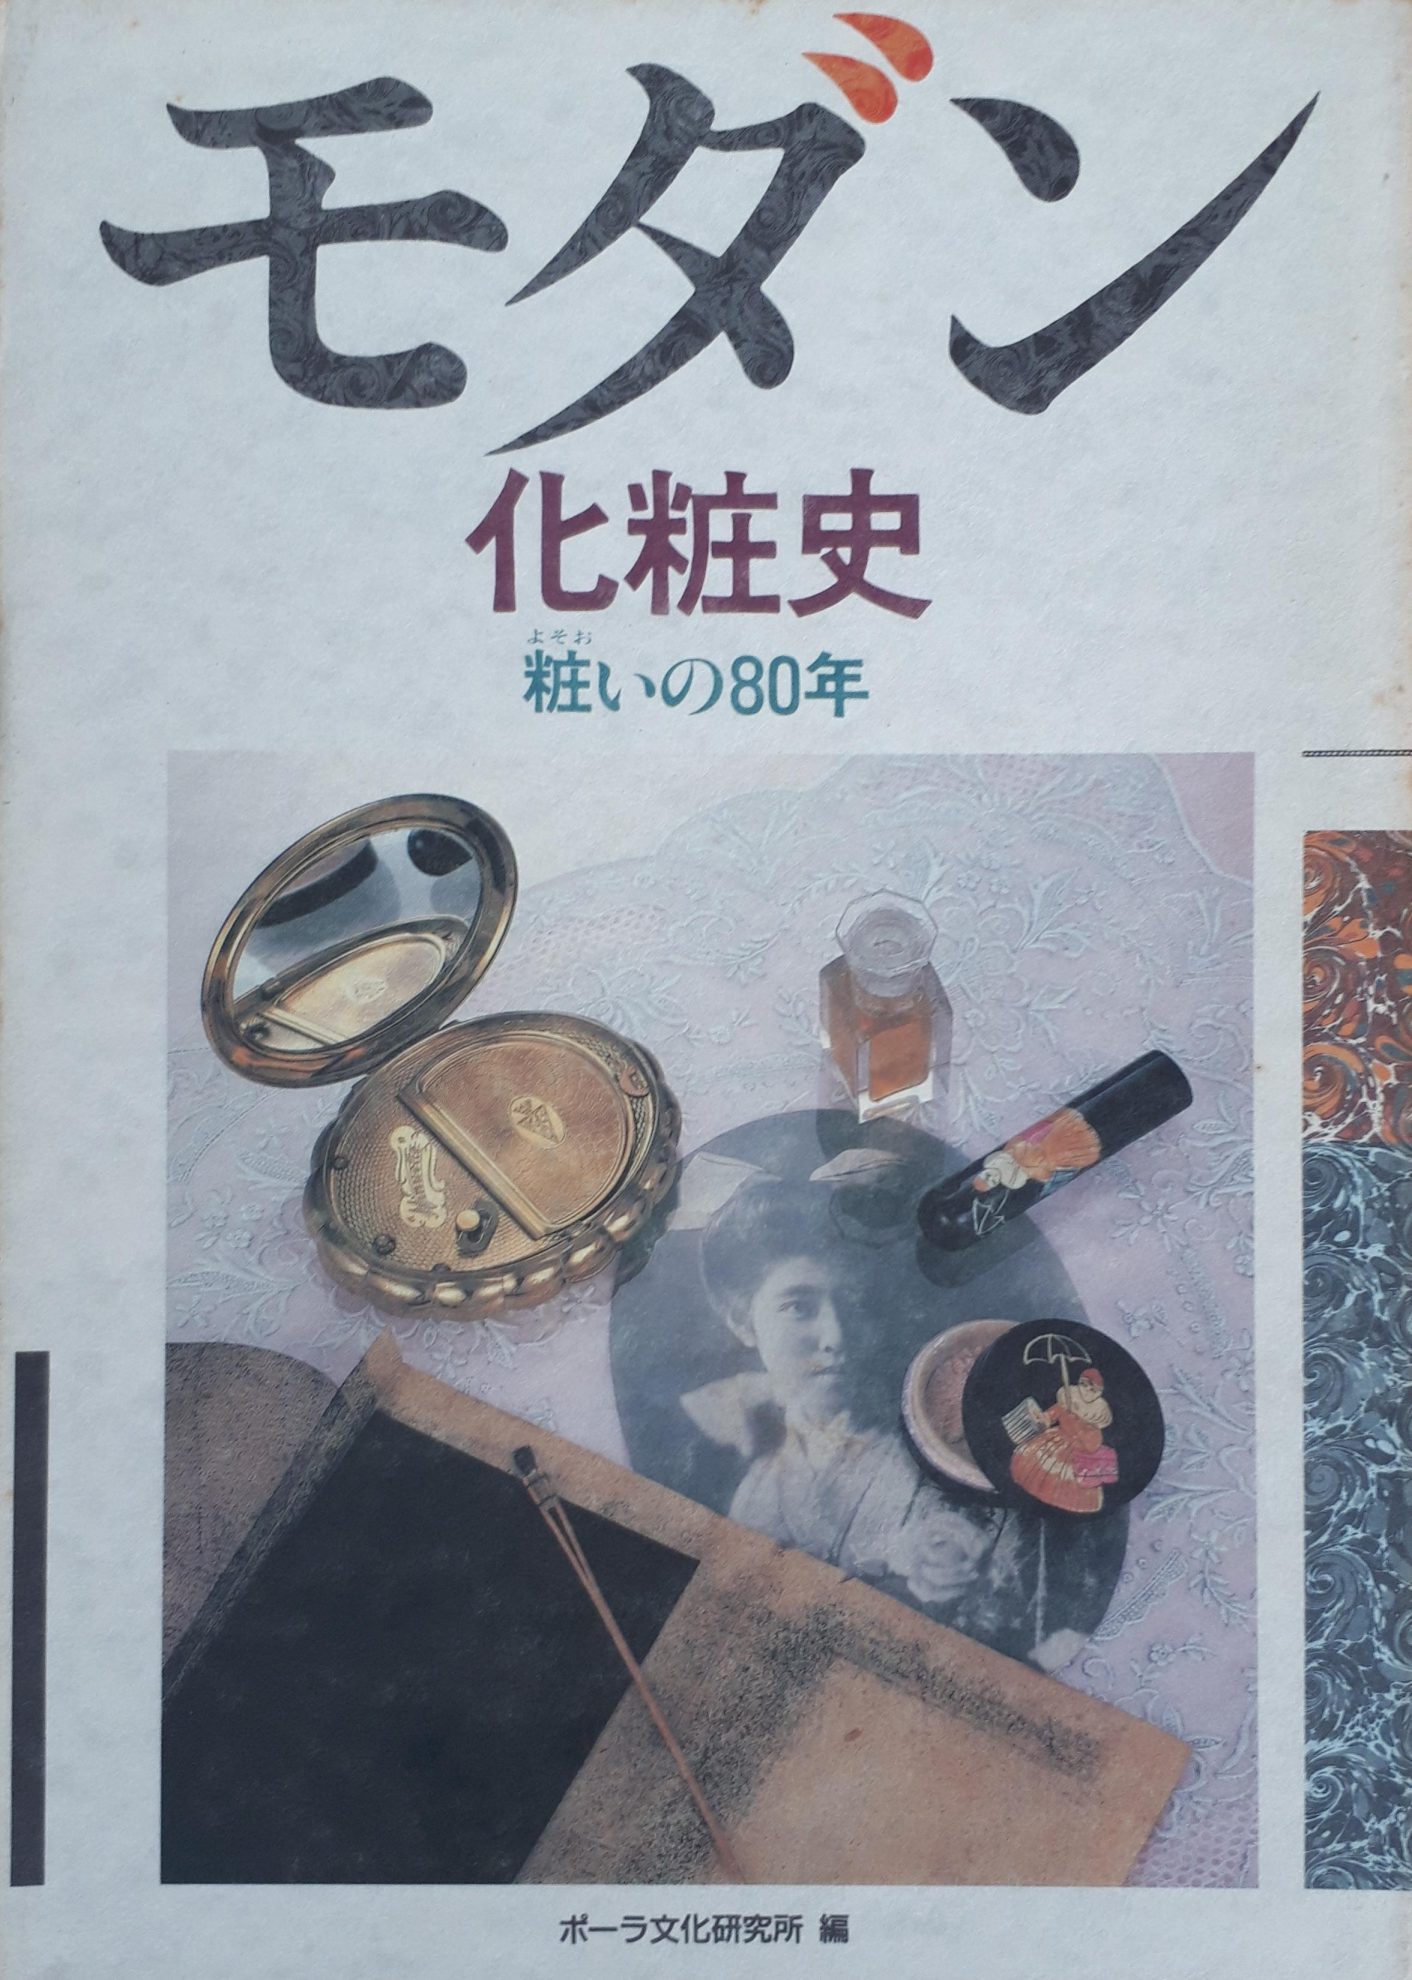 東亜香料史研究 (1976年) www.krzysztofbialy.com